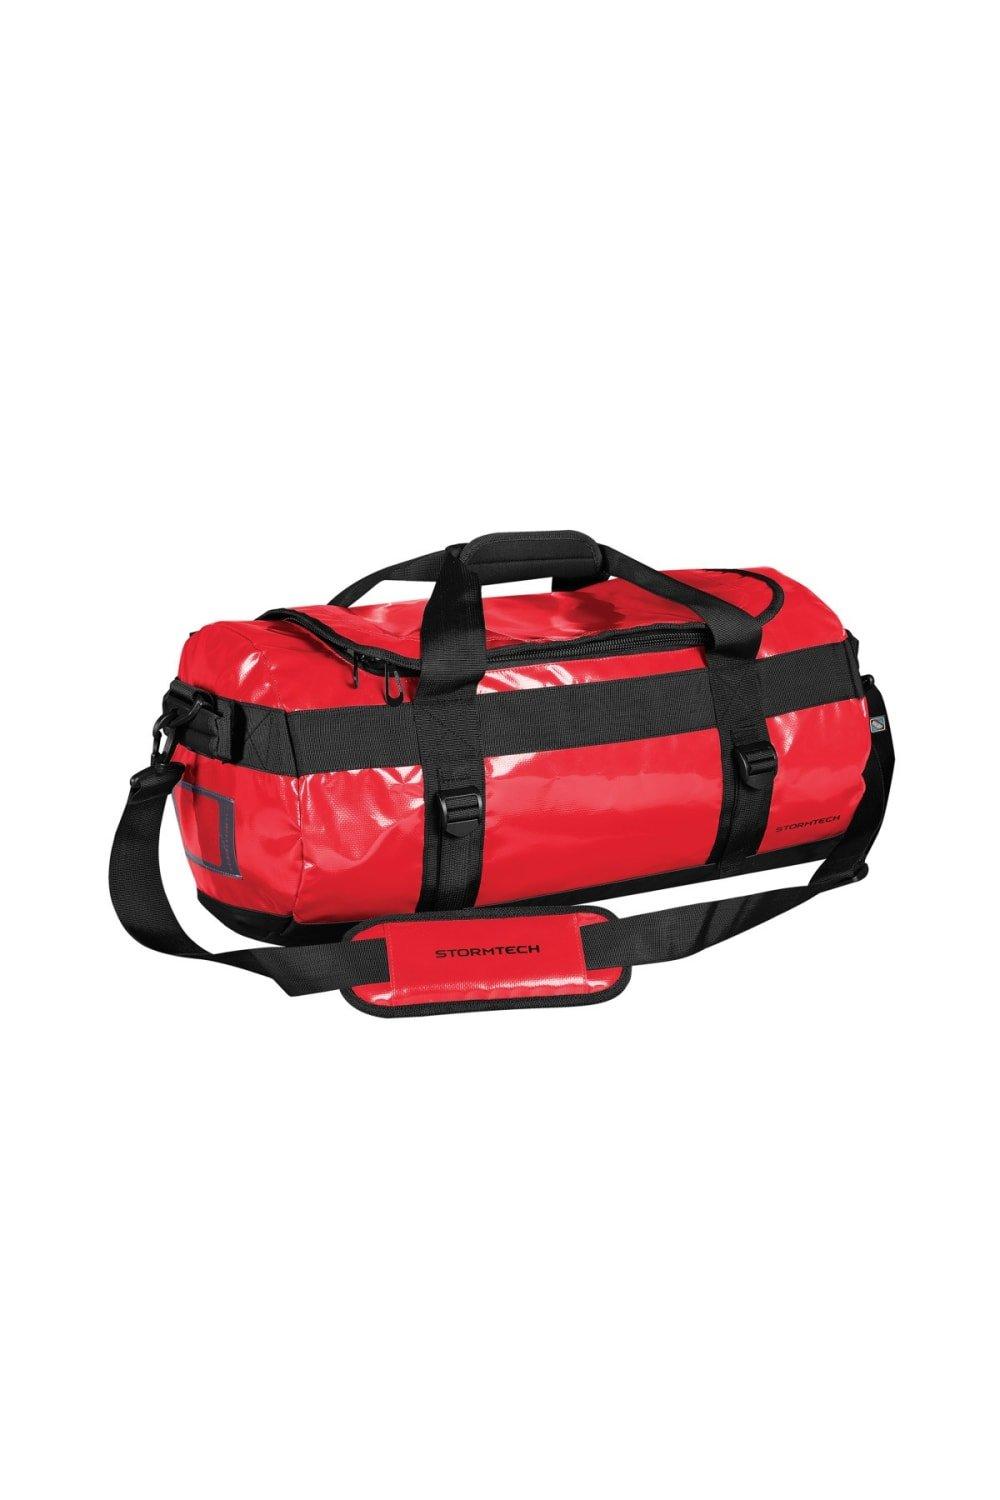 Водонепроницаемая сумка для снаряжения (маленькая) Stormtech, красный фото